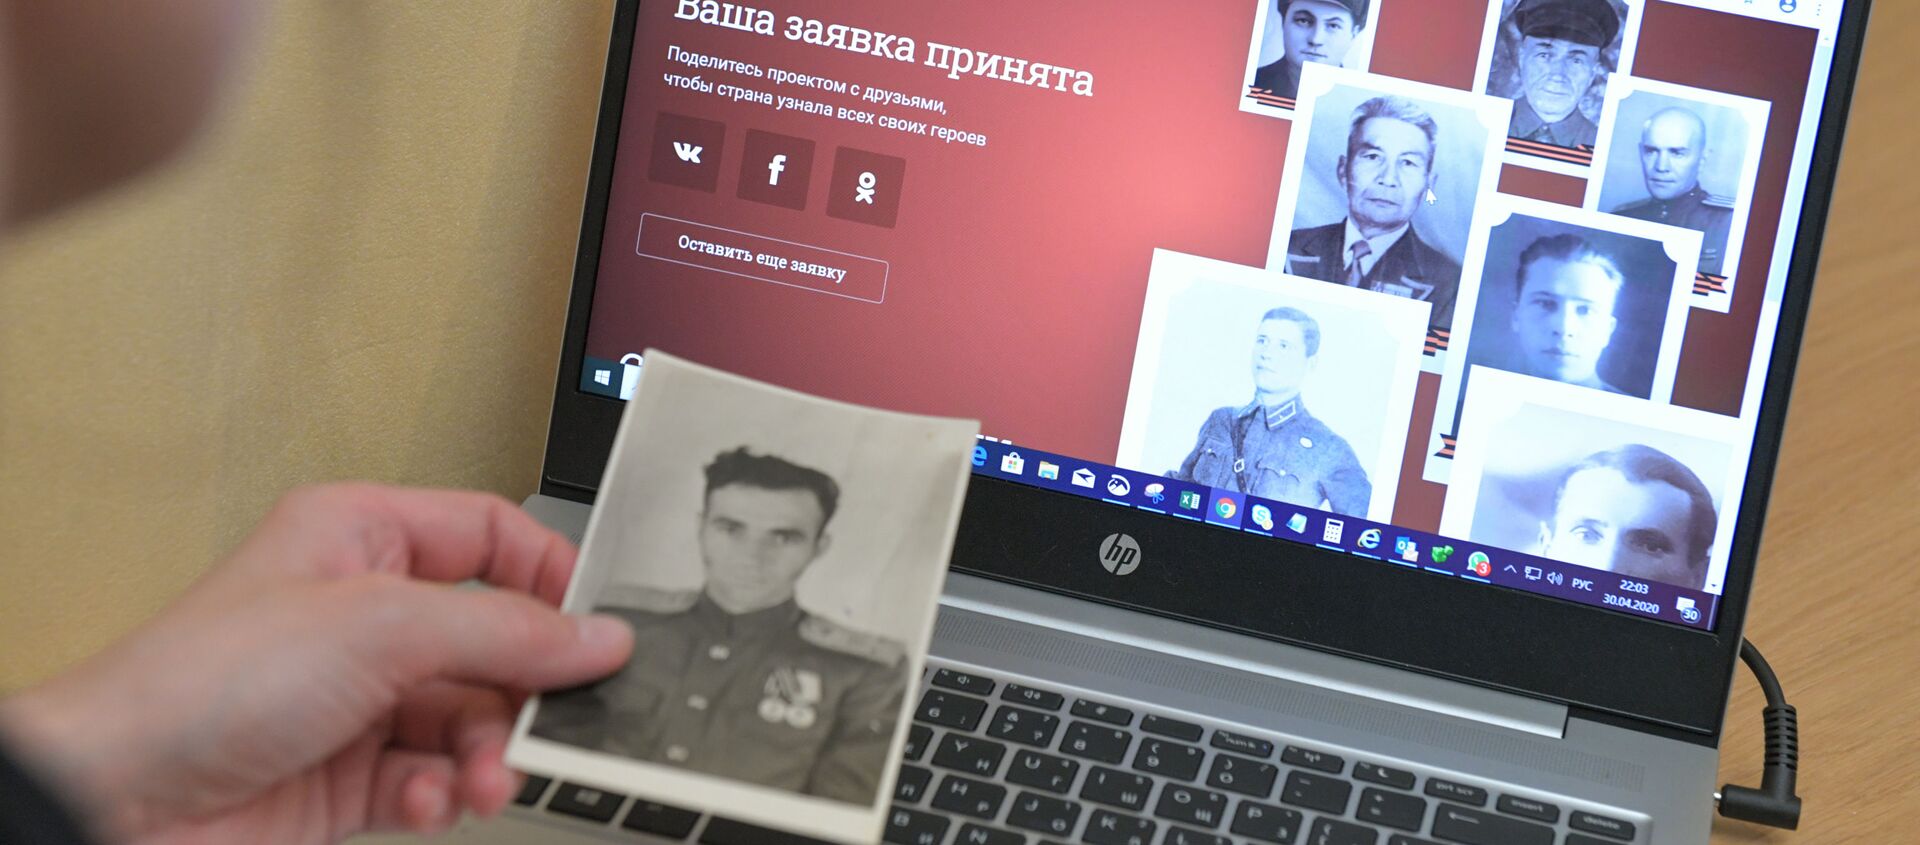 Жительница Москвы заполняет заявку для участия в акции Бессмертный полк онлайн  - Sputnik Азербайджан, 1920, 09.05.2021